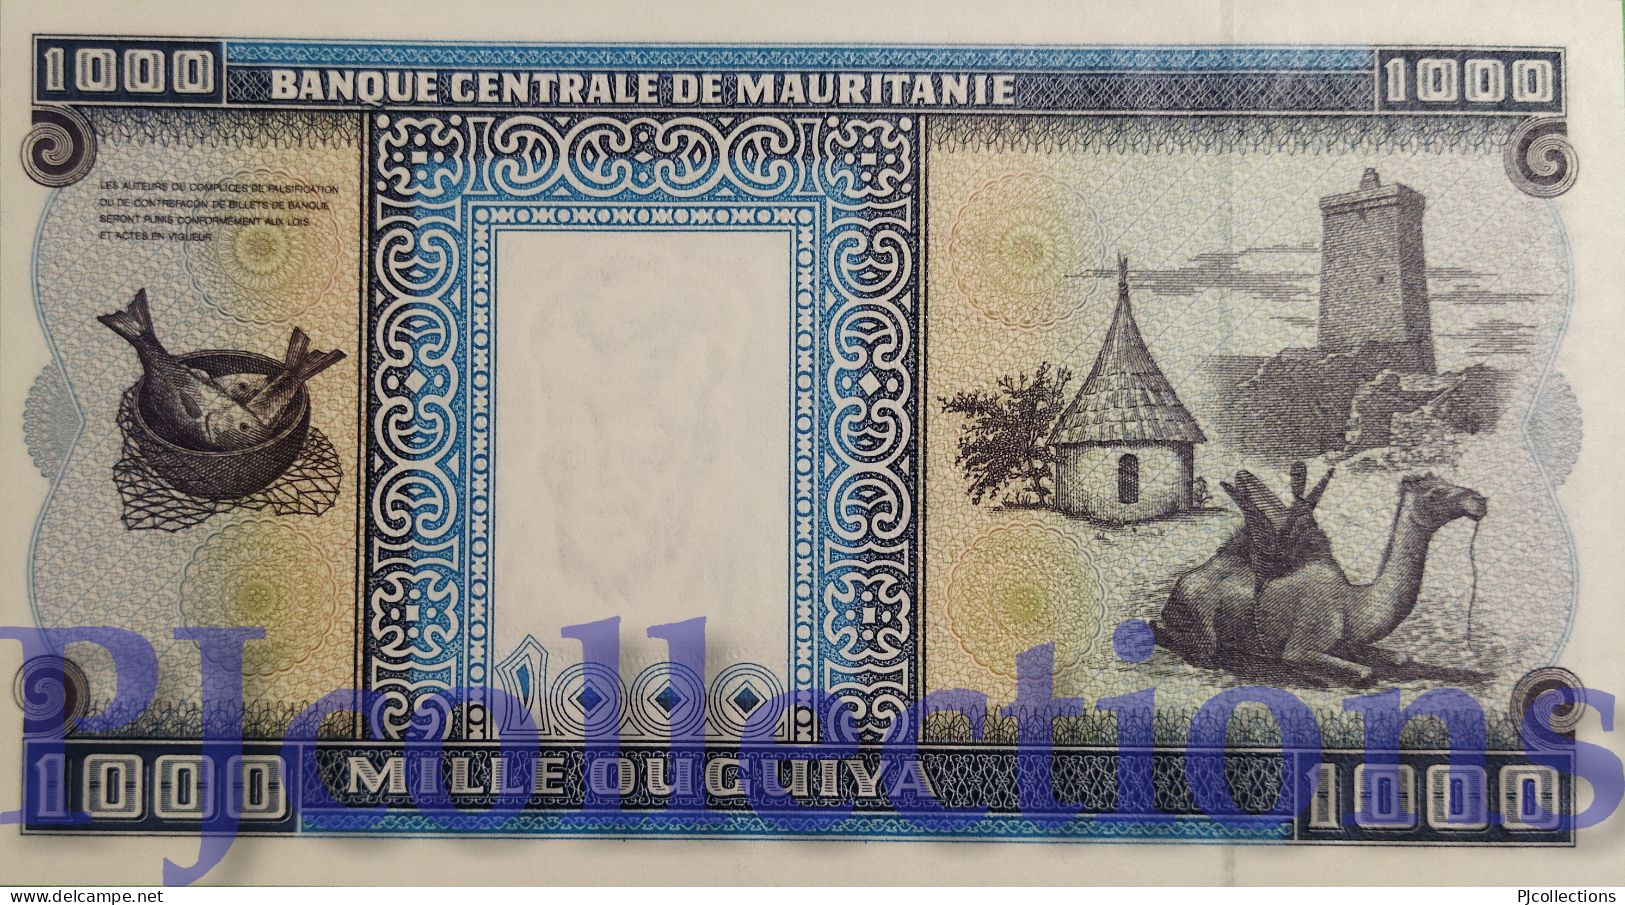 MAURITANIA 1000 OUGUIYA 1999 PICK 9a UNC - Mauritanien